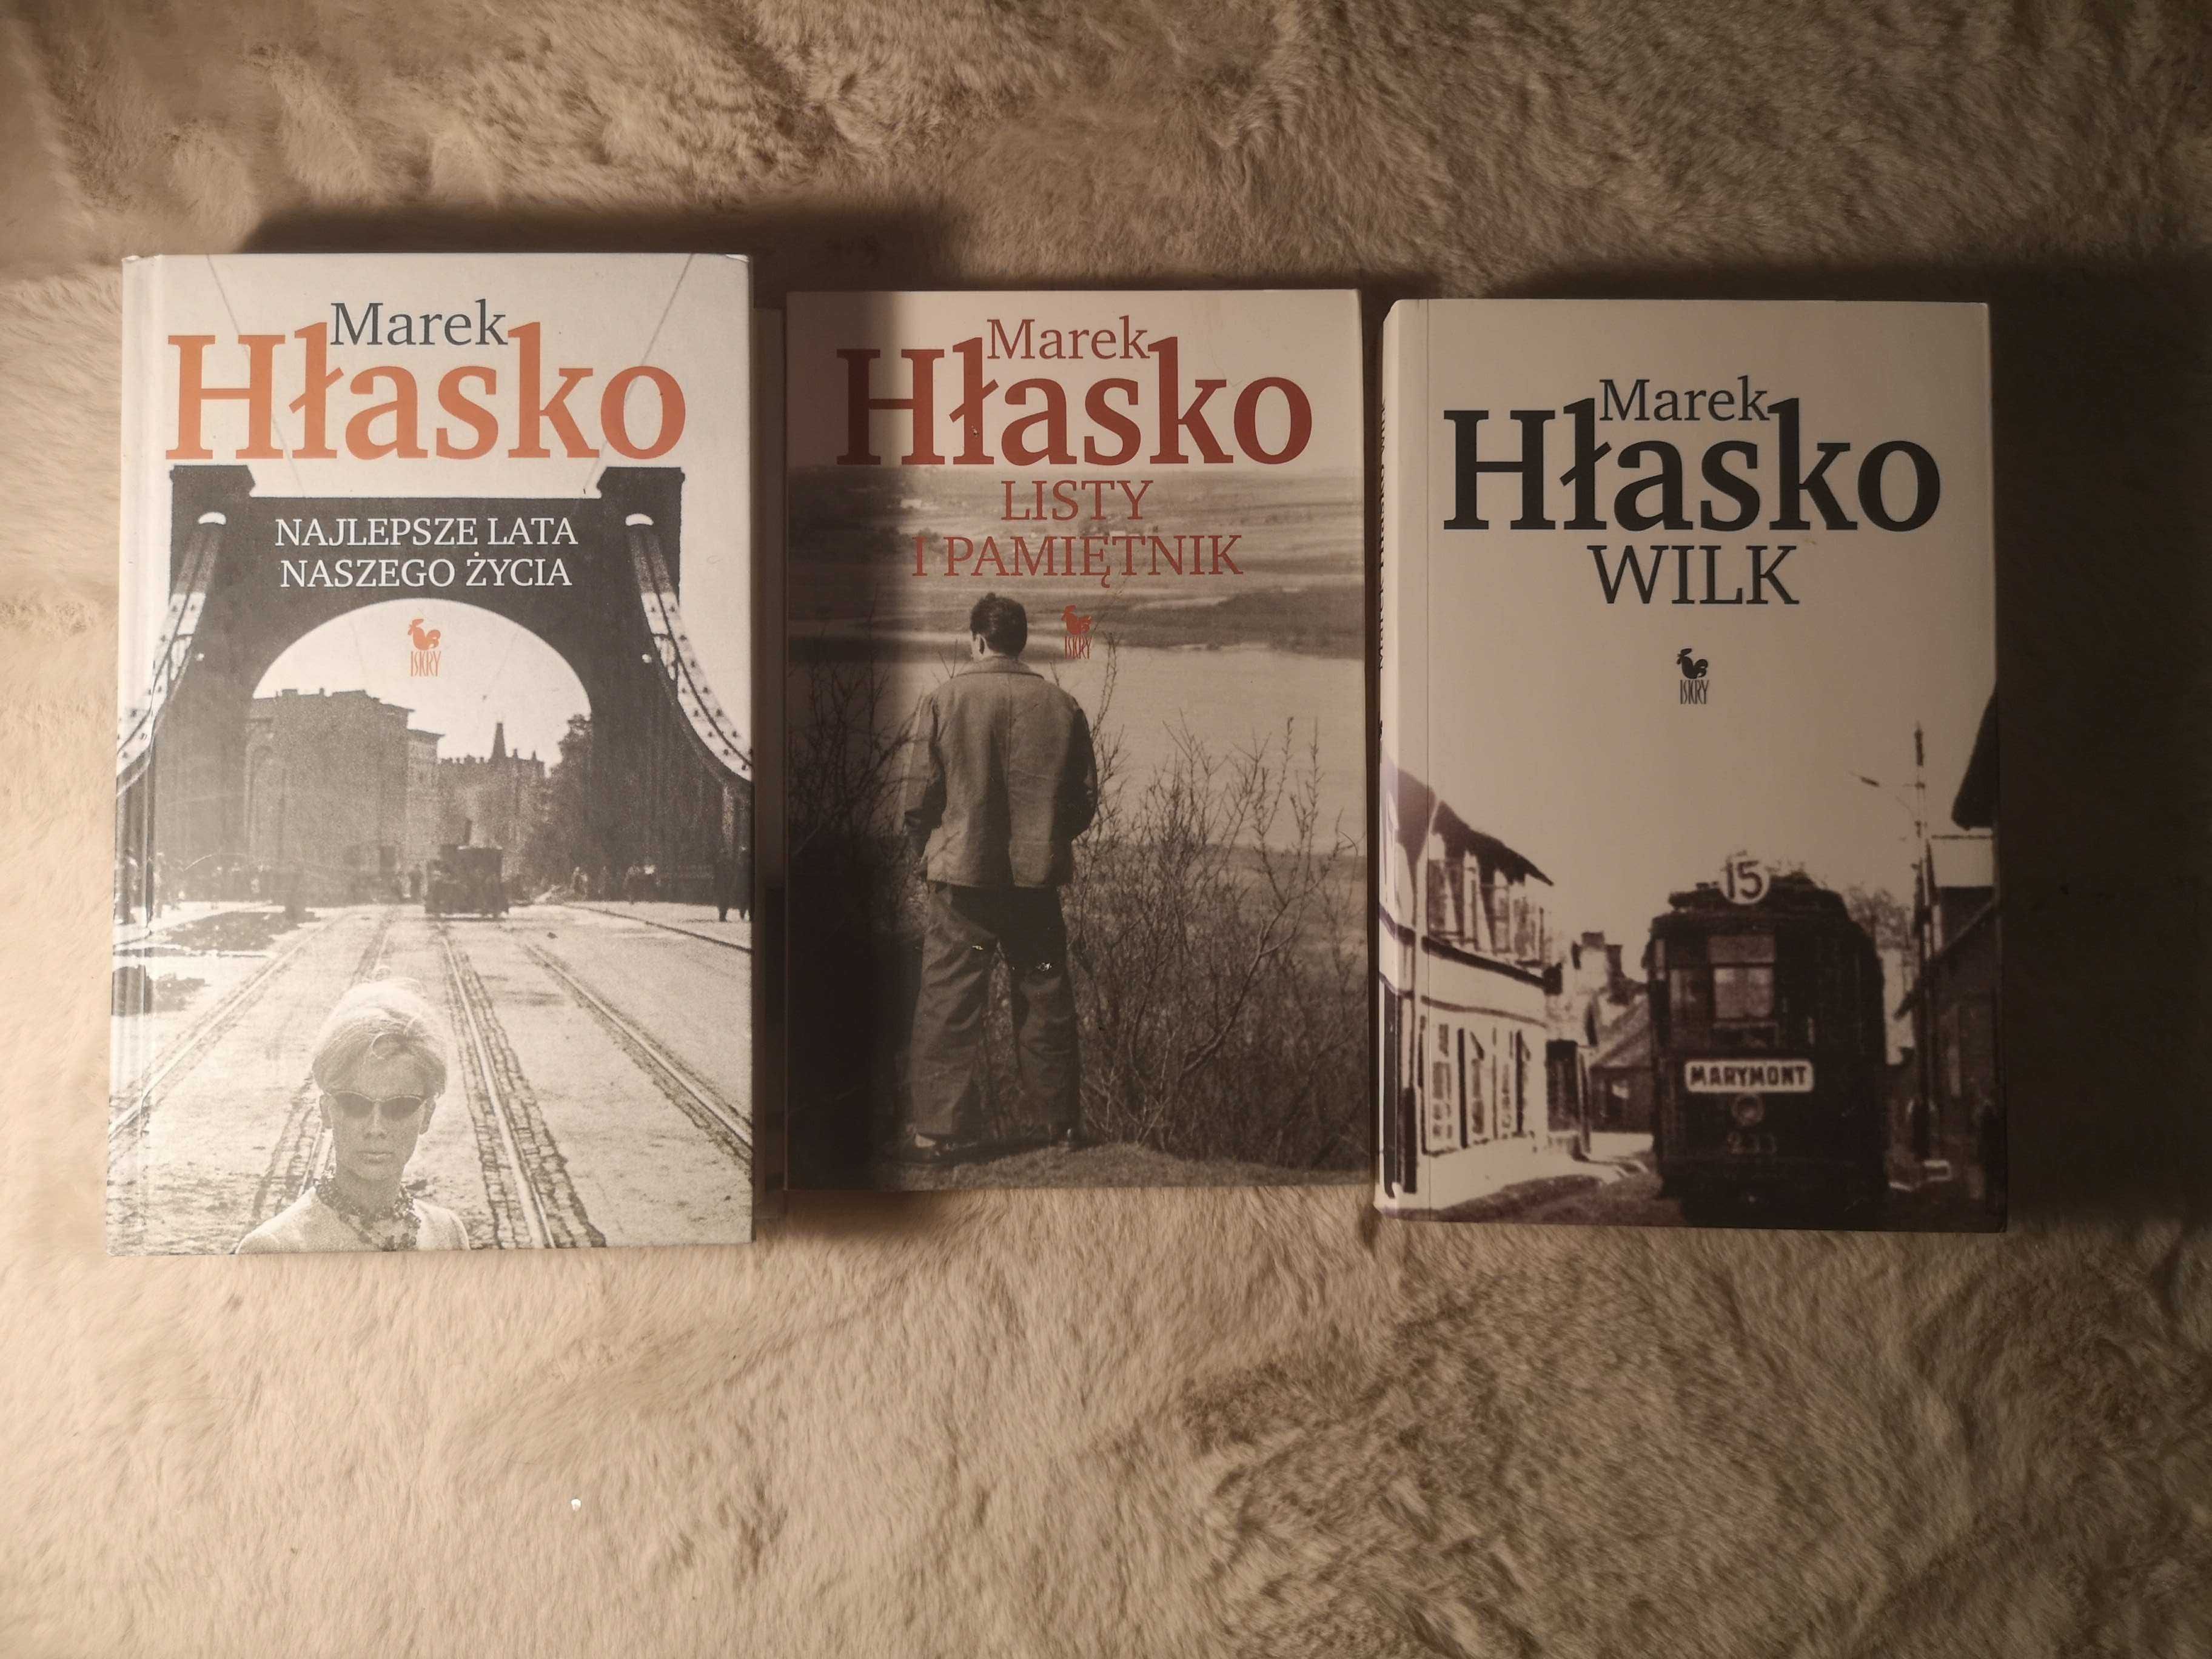 Marek Hłasko - Wilk + Listy i pamiętnik + Najlepsze lata naszego życia